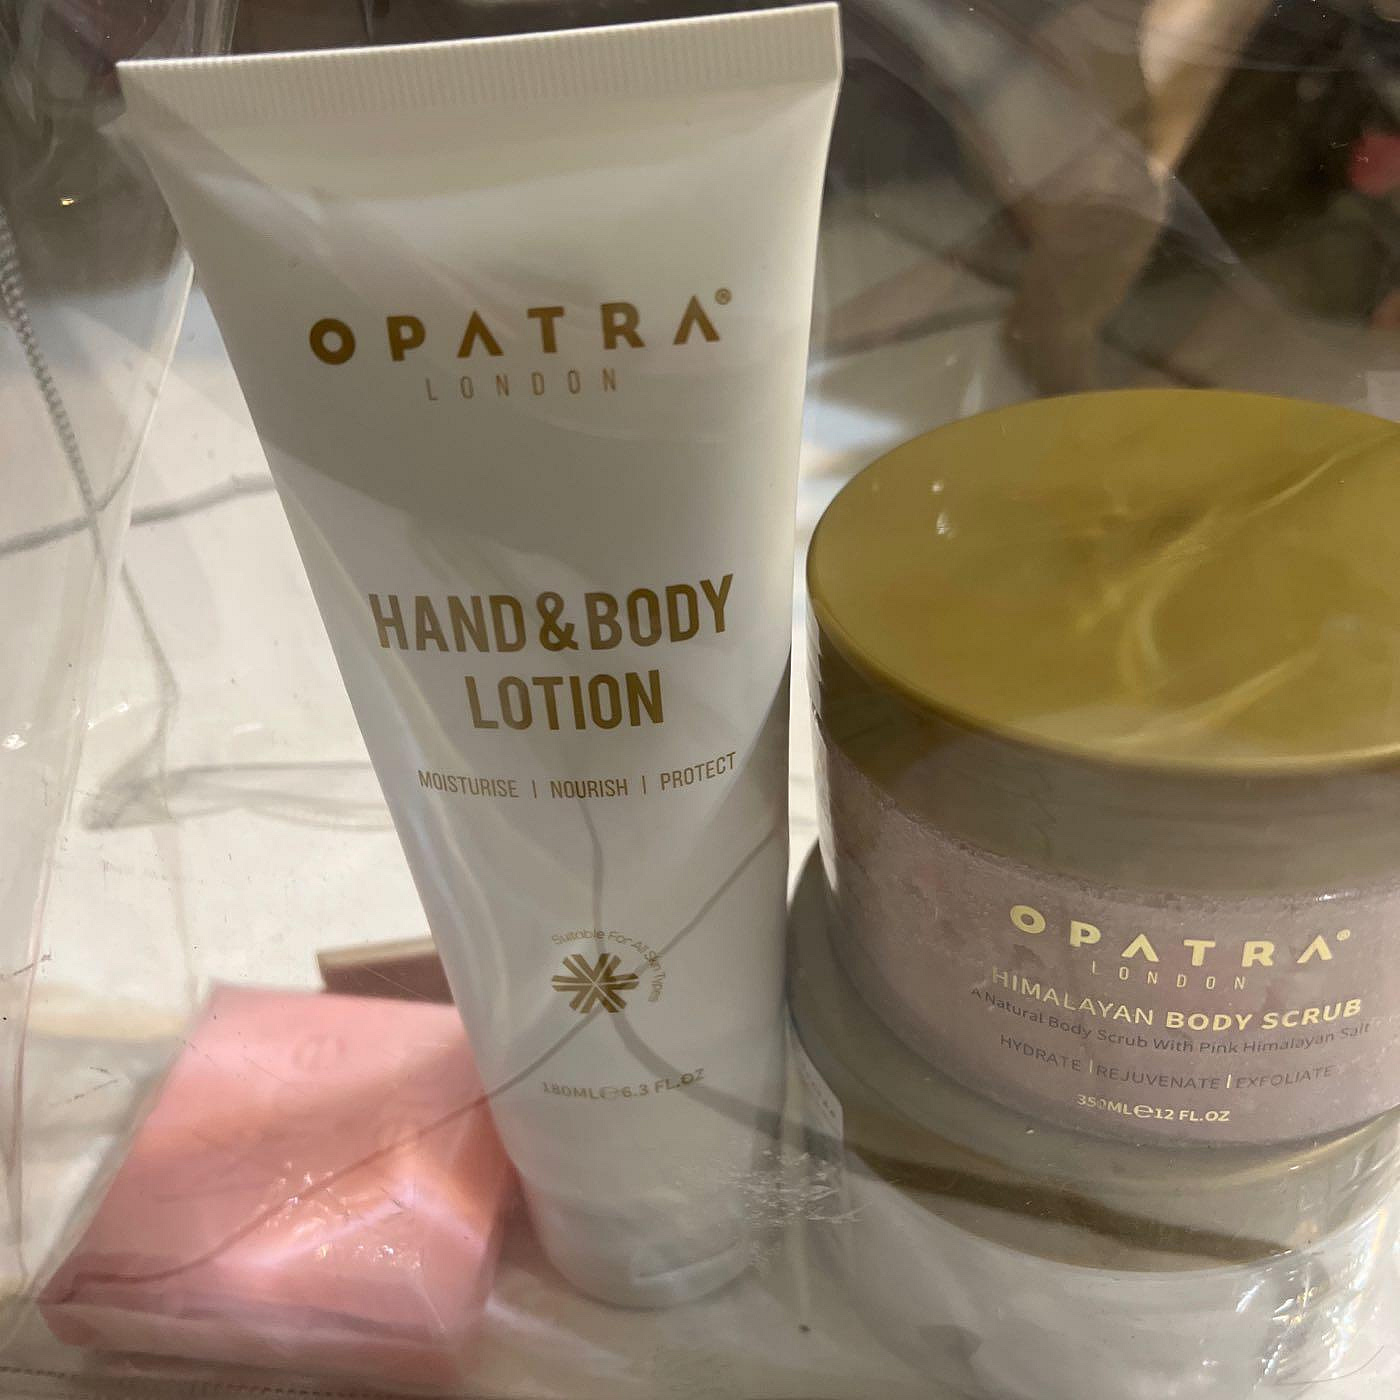 OPATRA喜馬拉雅身體修護磨砂膏+OPATRA修護滋養身體霜組